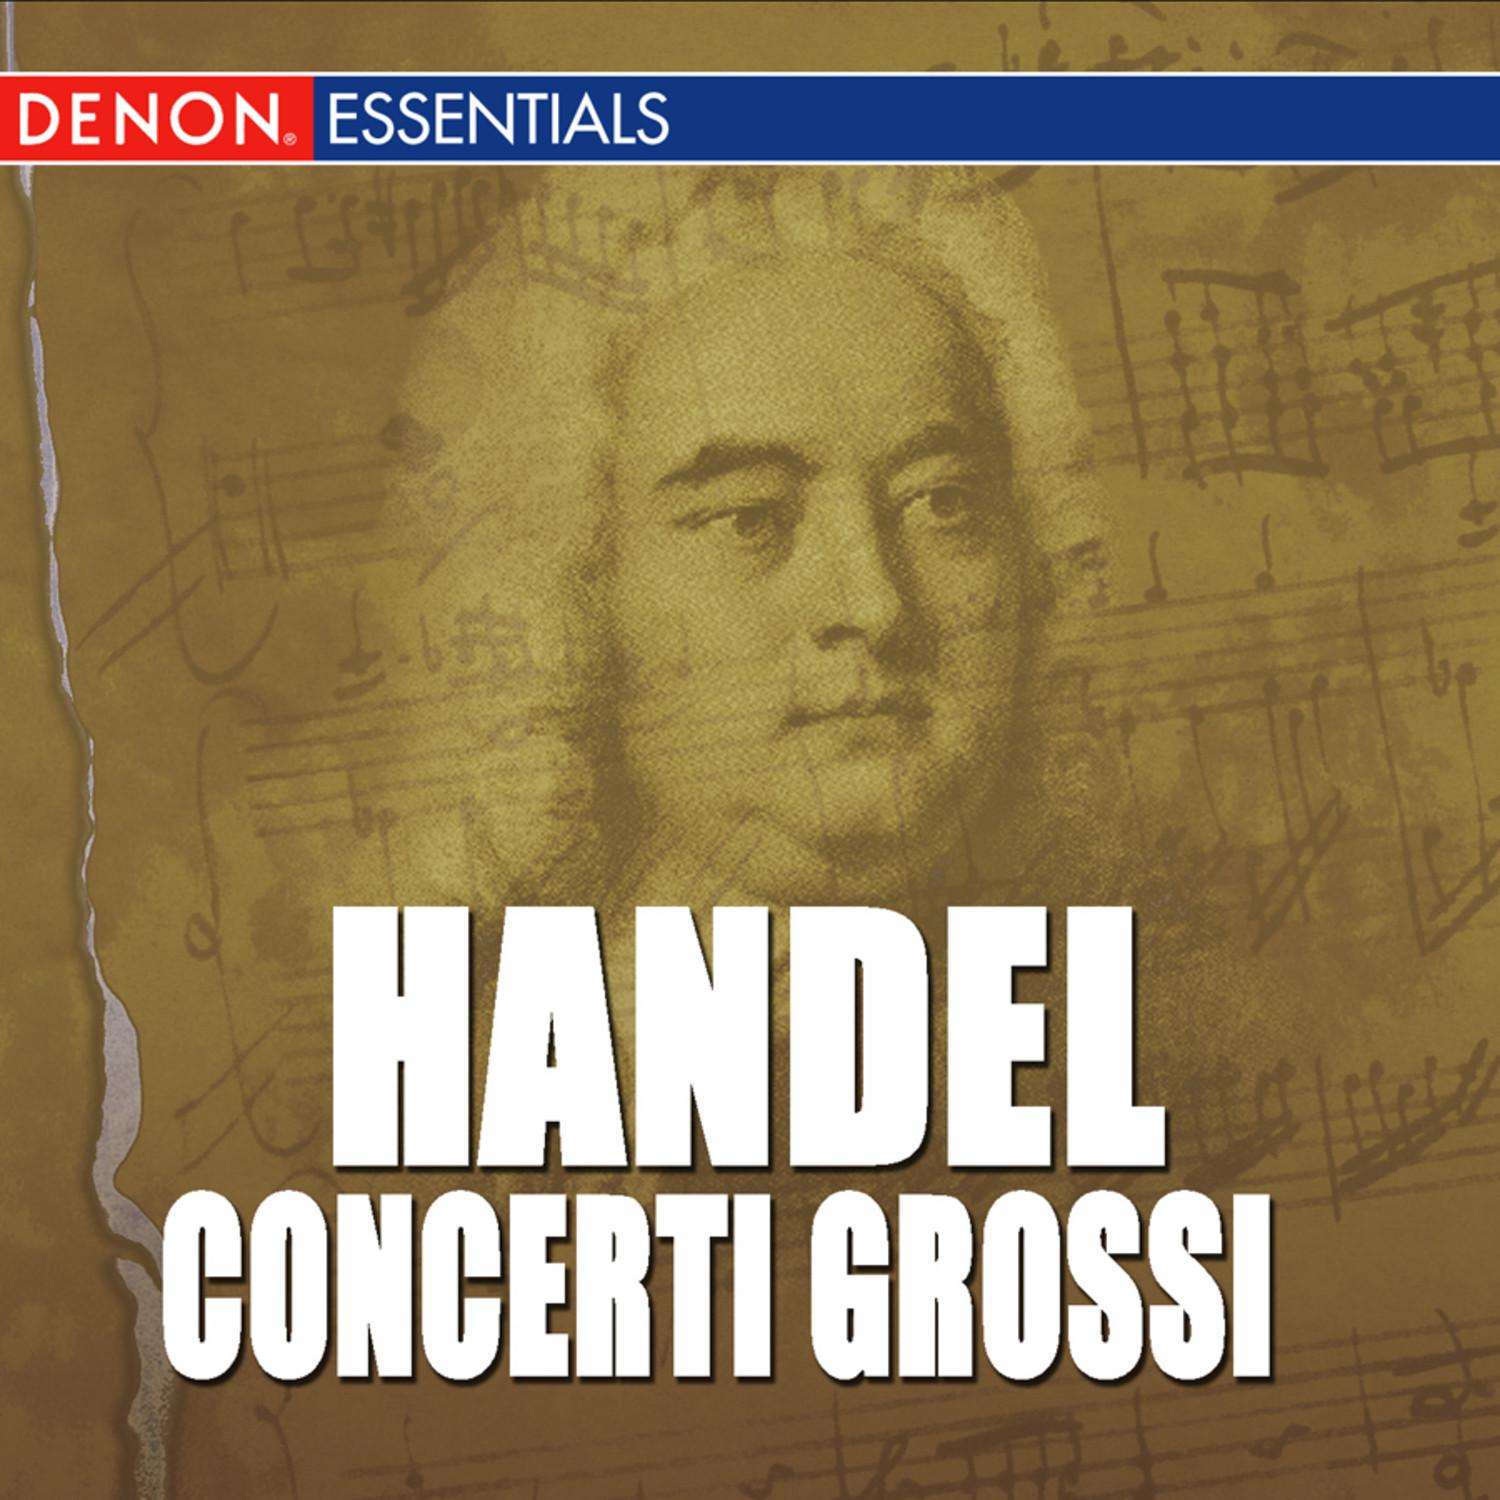 Concerto Grosso, Op. 6: No. 6 in G Minor, HWV 324: I. Larghetto e affettuoso